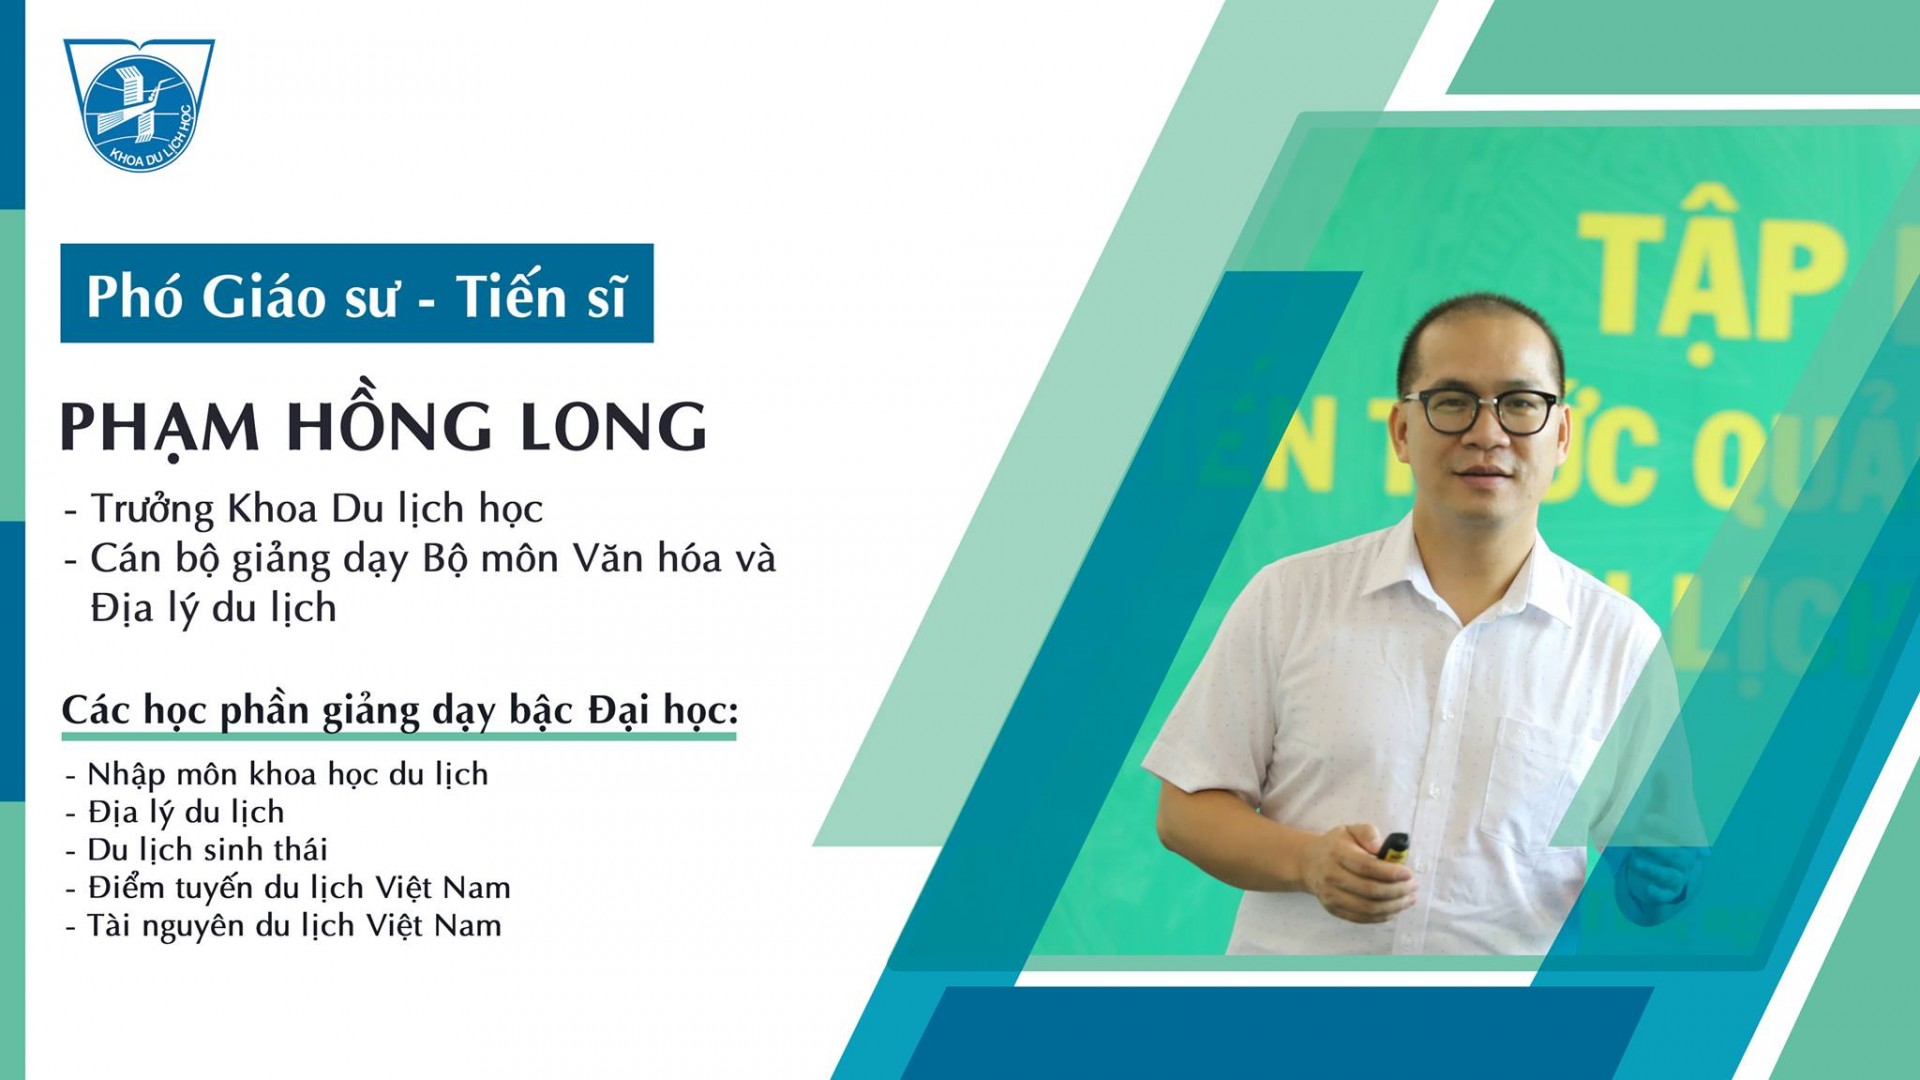 PGS.TS. Phạm Hồng Long